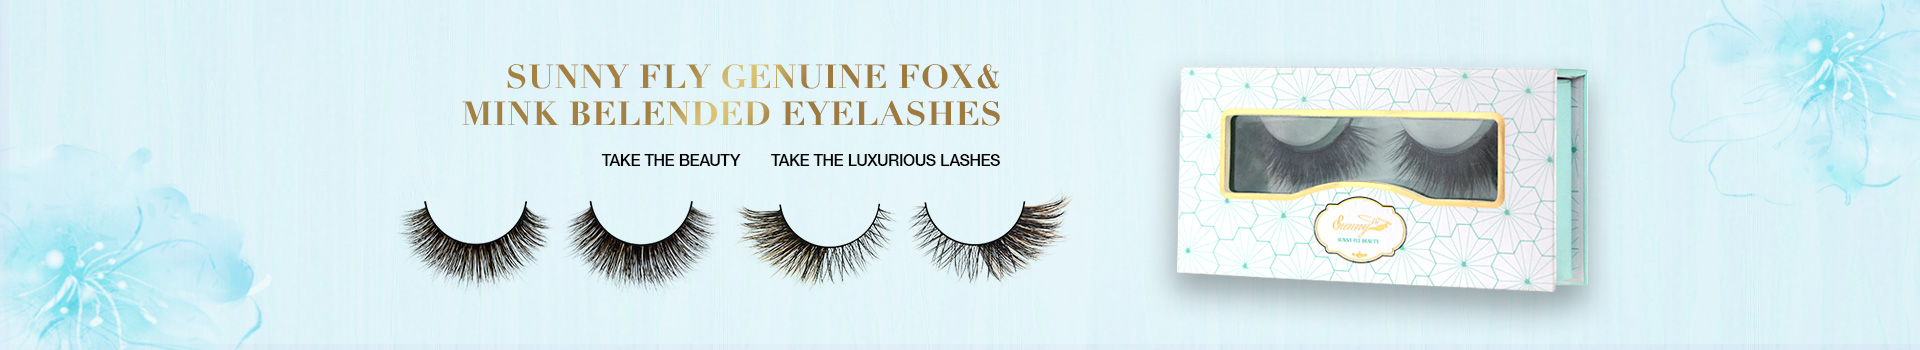 Fox & Mink Fur Blended Eyelashes FMB01